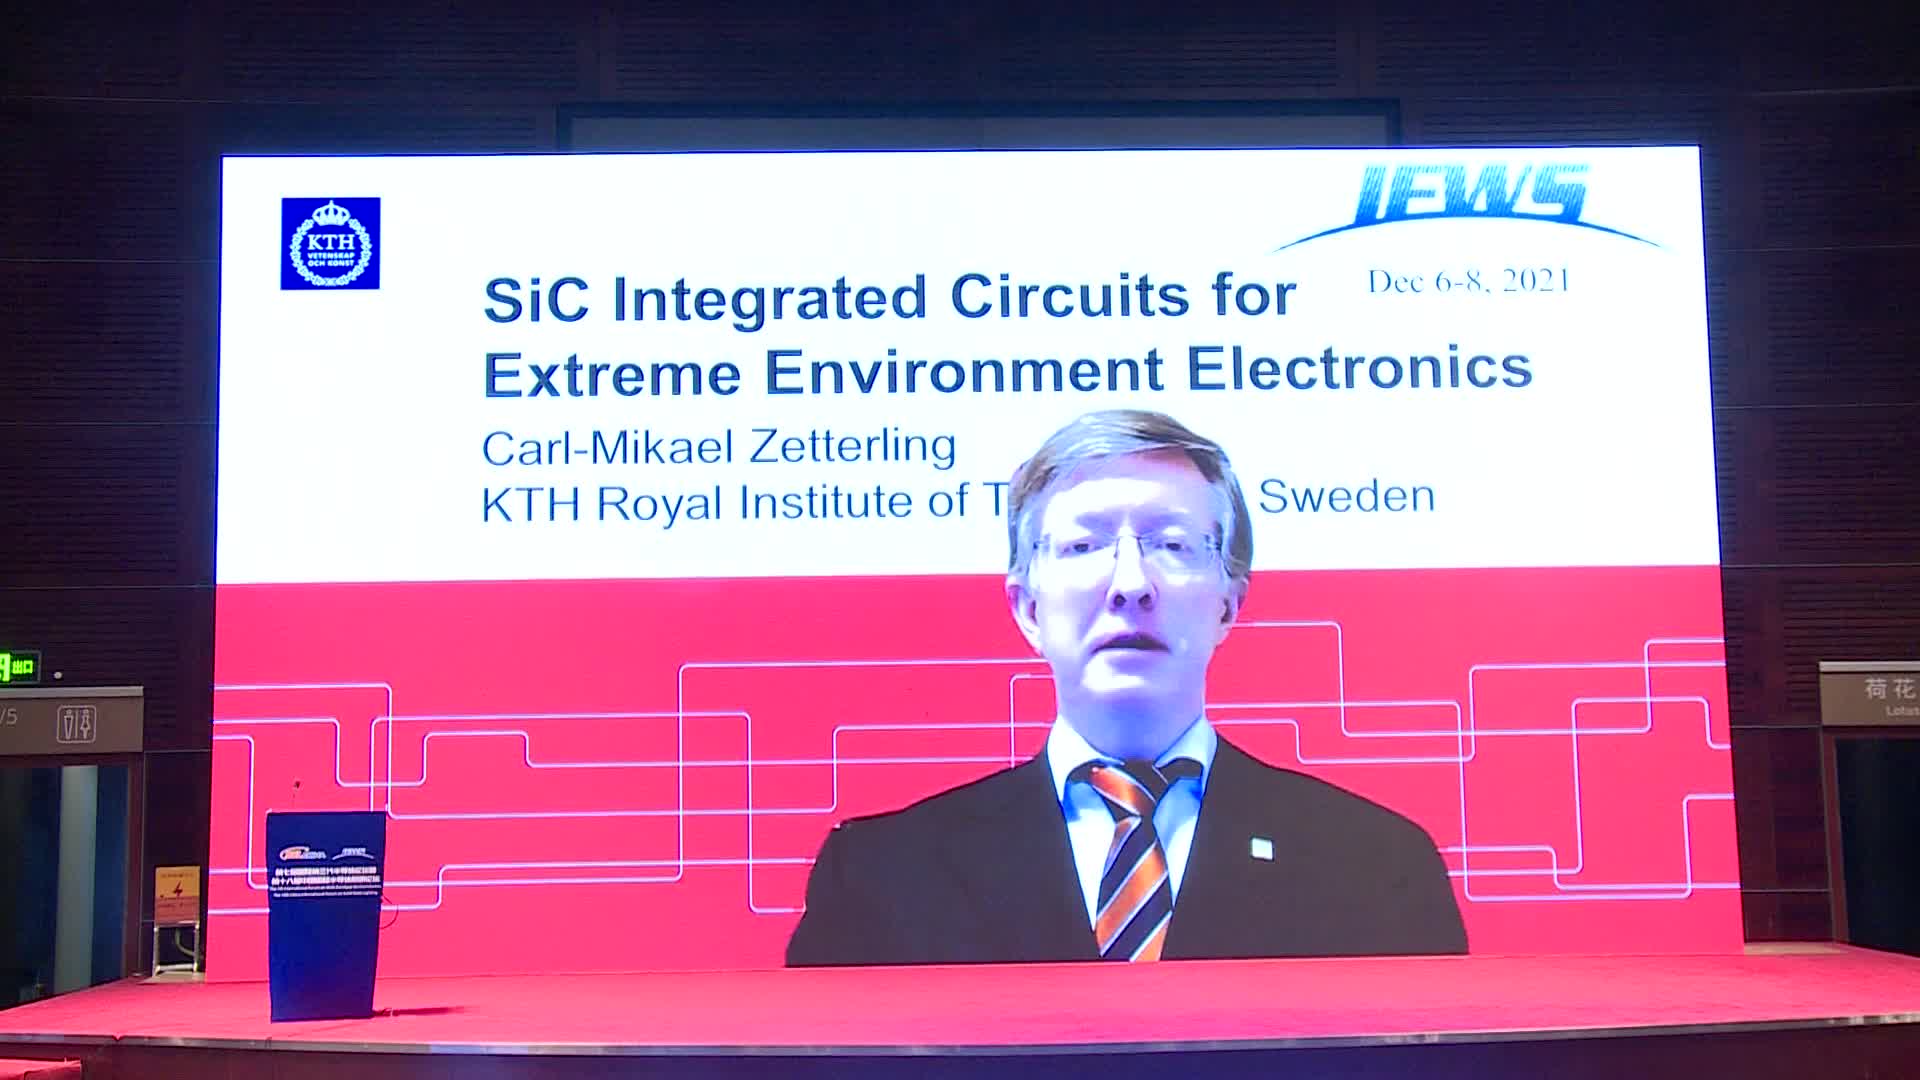 瑞典皇家理工学院教授Carl-Mikael Zetterling：用于极端环境电子产品的 SiC 集成电路